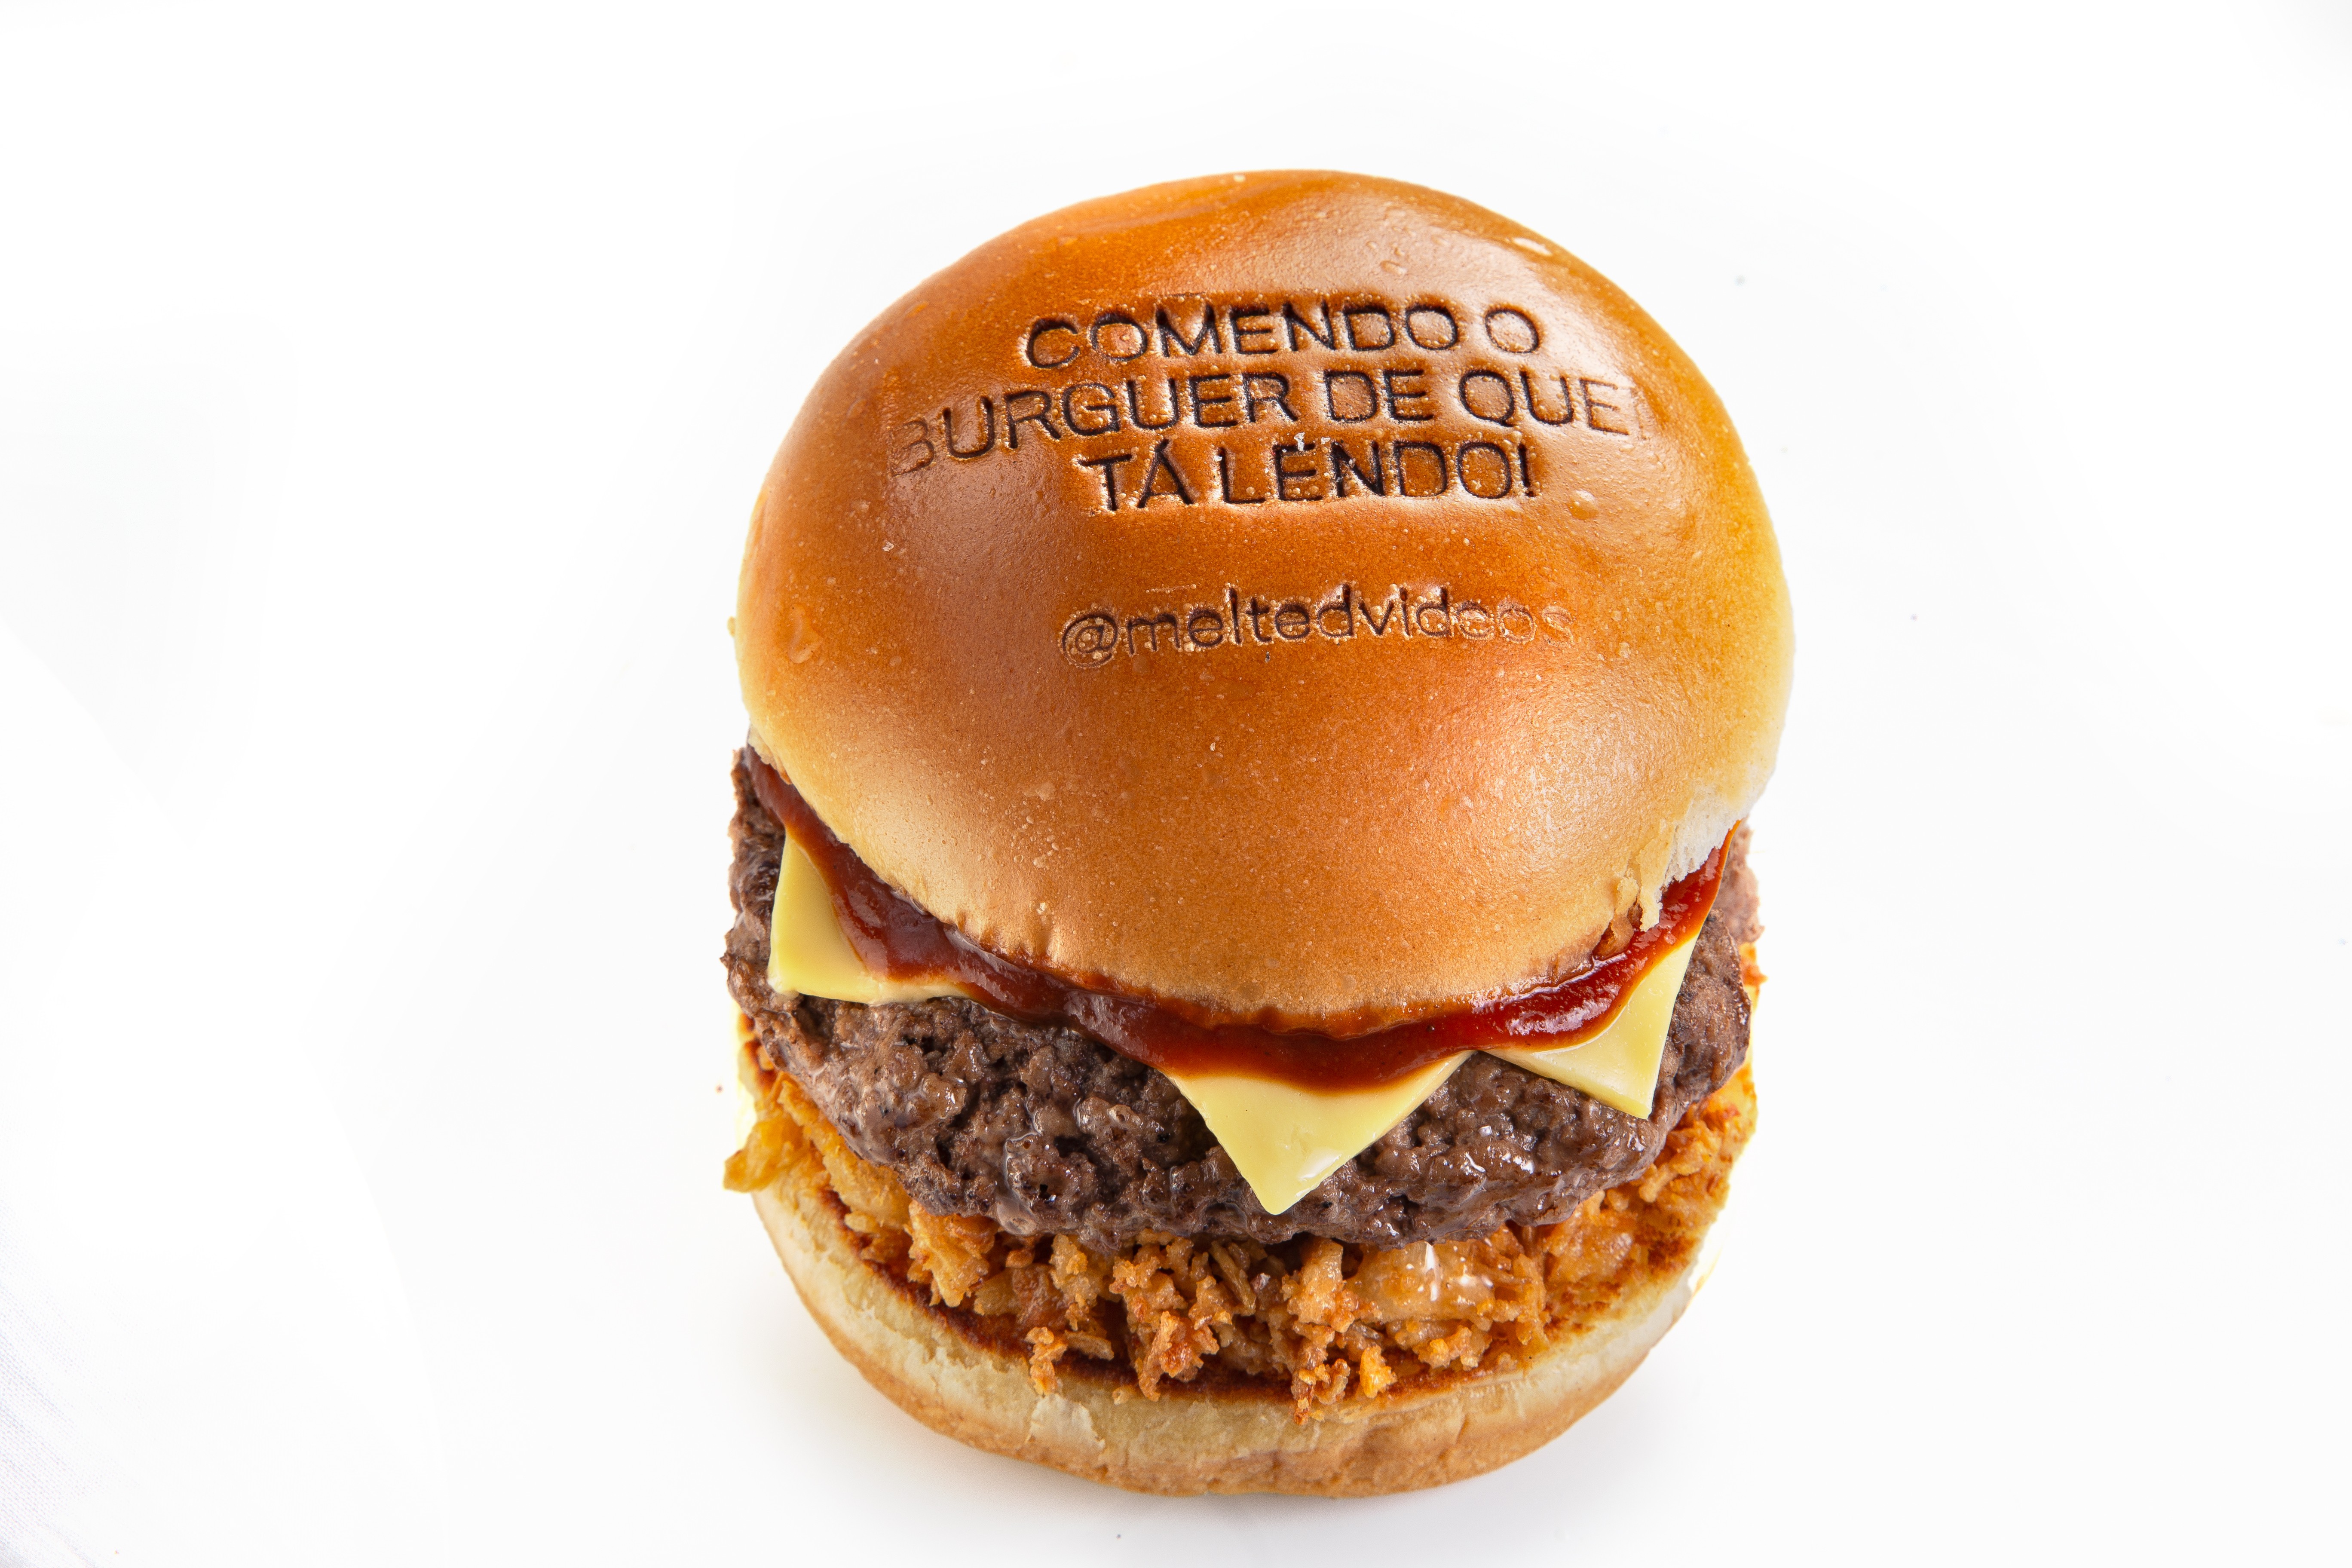 Hamburgueria e página de humor criam burger com memes carimbados nos pães (Foto: Divulgação)